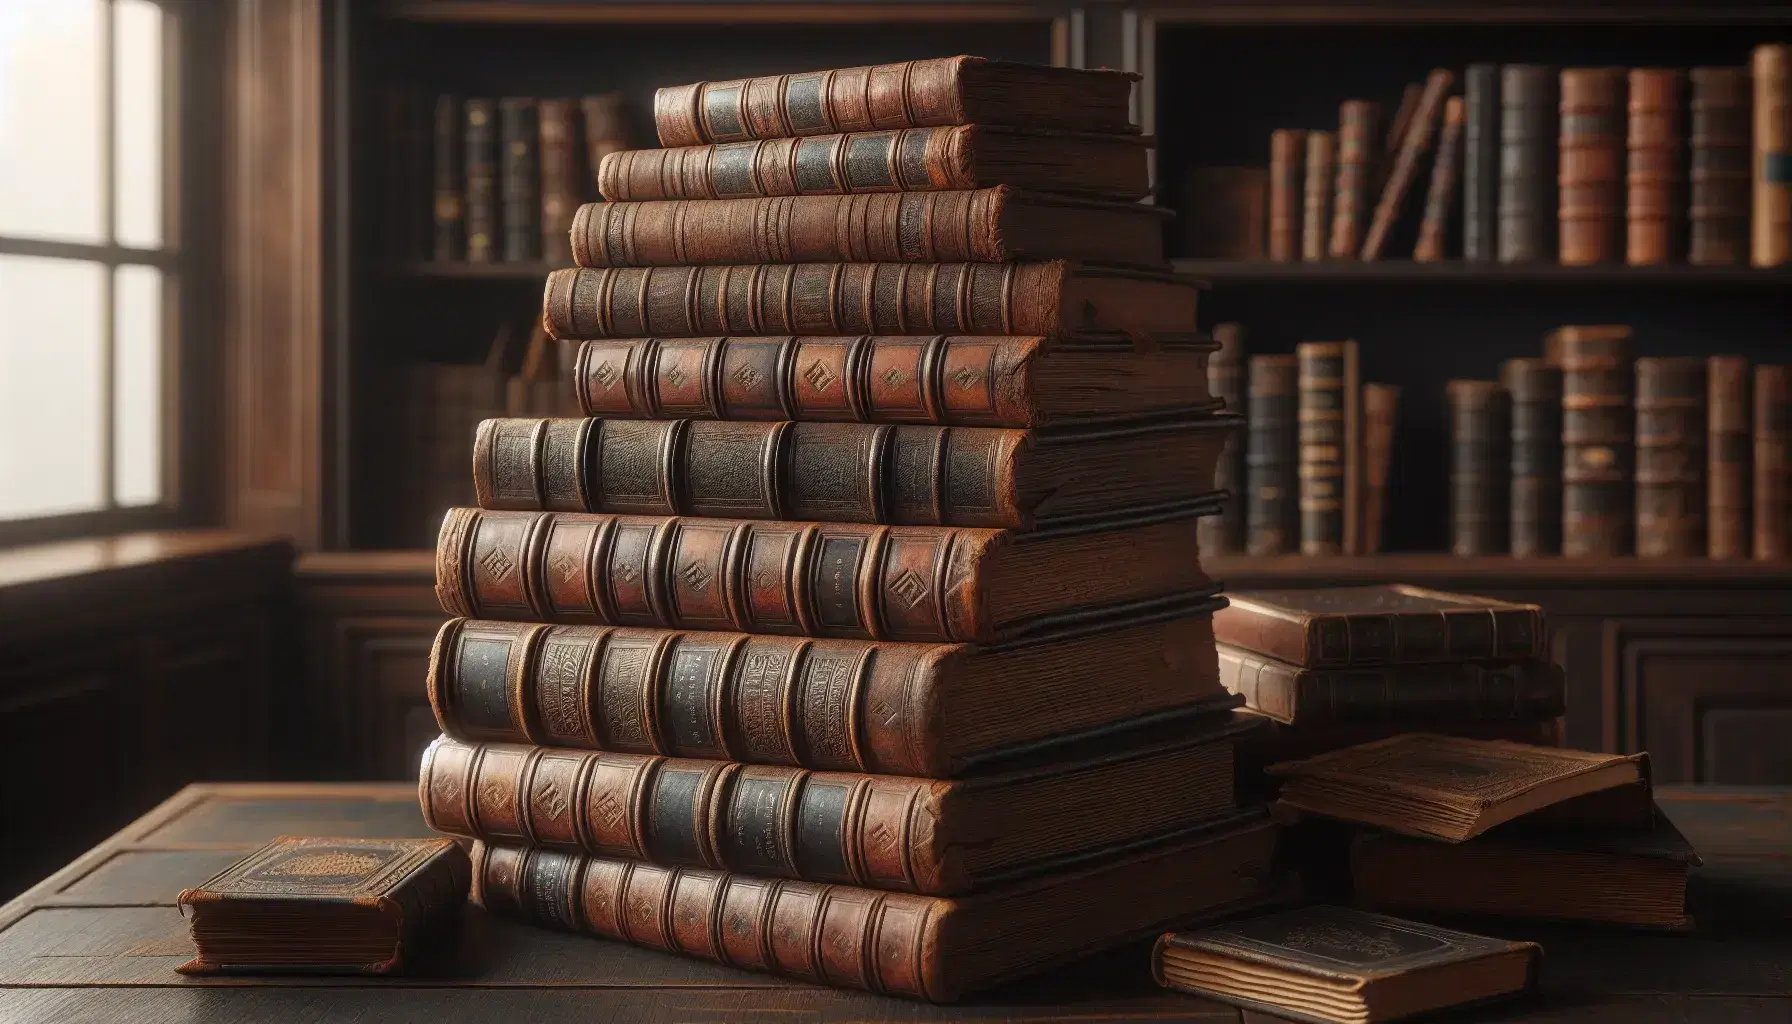 Pila de libros antiguos con tapas de cuero desgastadas sobre mesa de madera oscura, con estante borroso al fondo y luz cálida resaltando texturas y relieves.